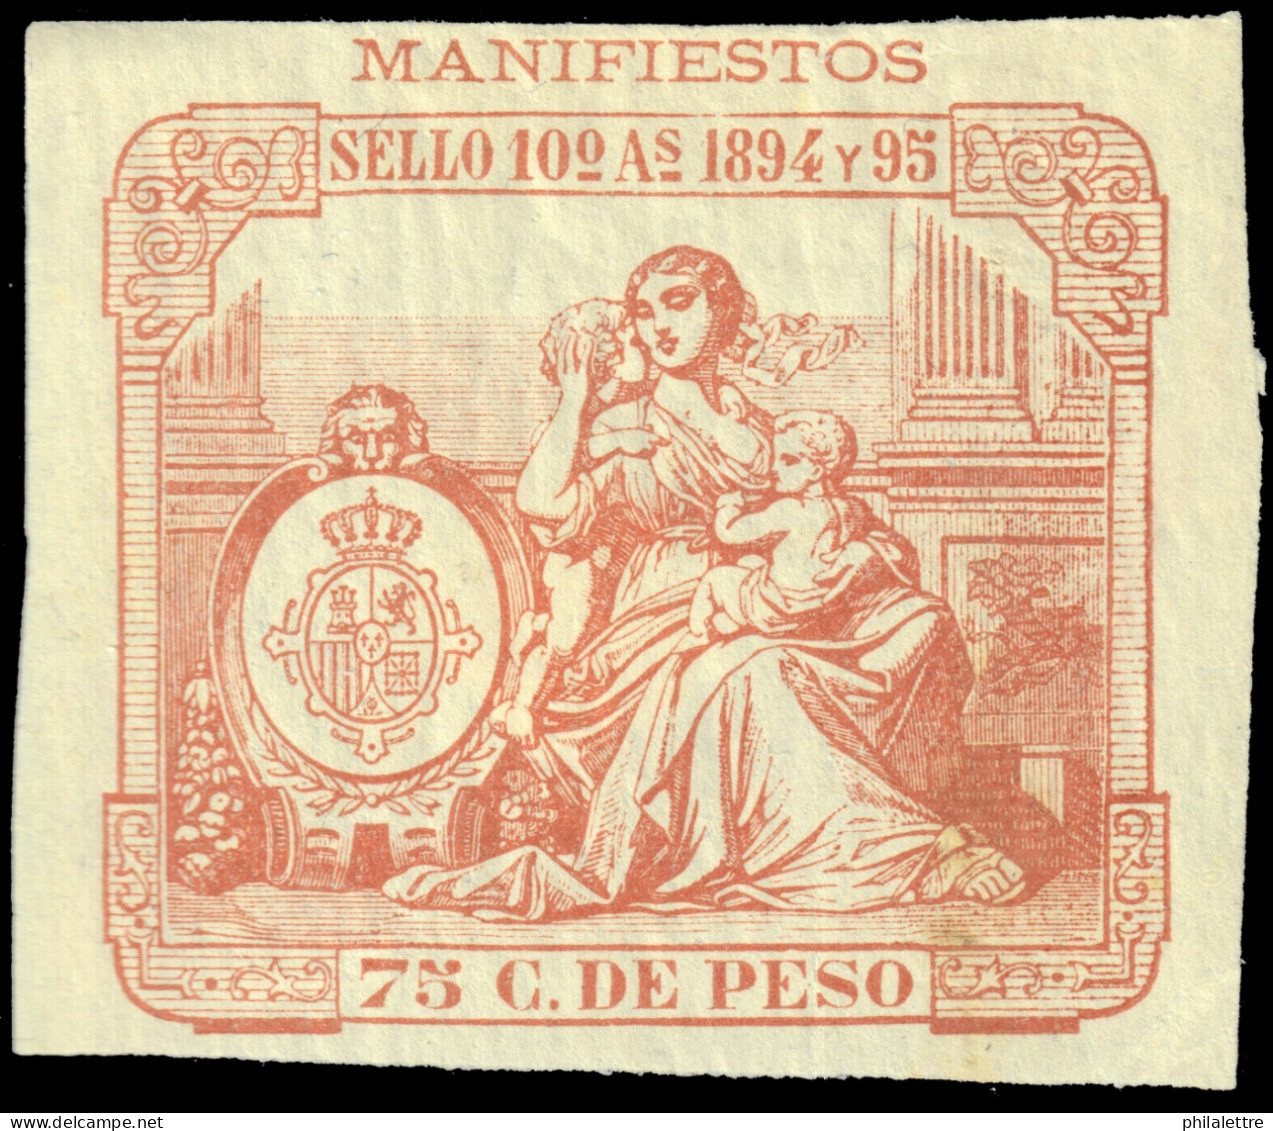 ESPAGNE / ESPANA - COLONIAS (Cuba) 1894 "MANIFIESTOS" Fulcher 1027 75c Naranja - Nuevo* - Kuba (1874-1898)